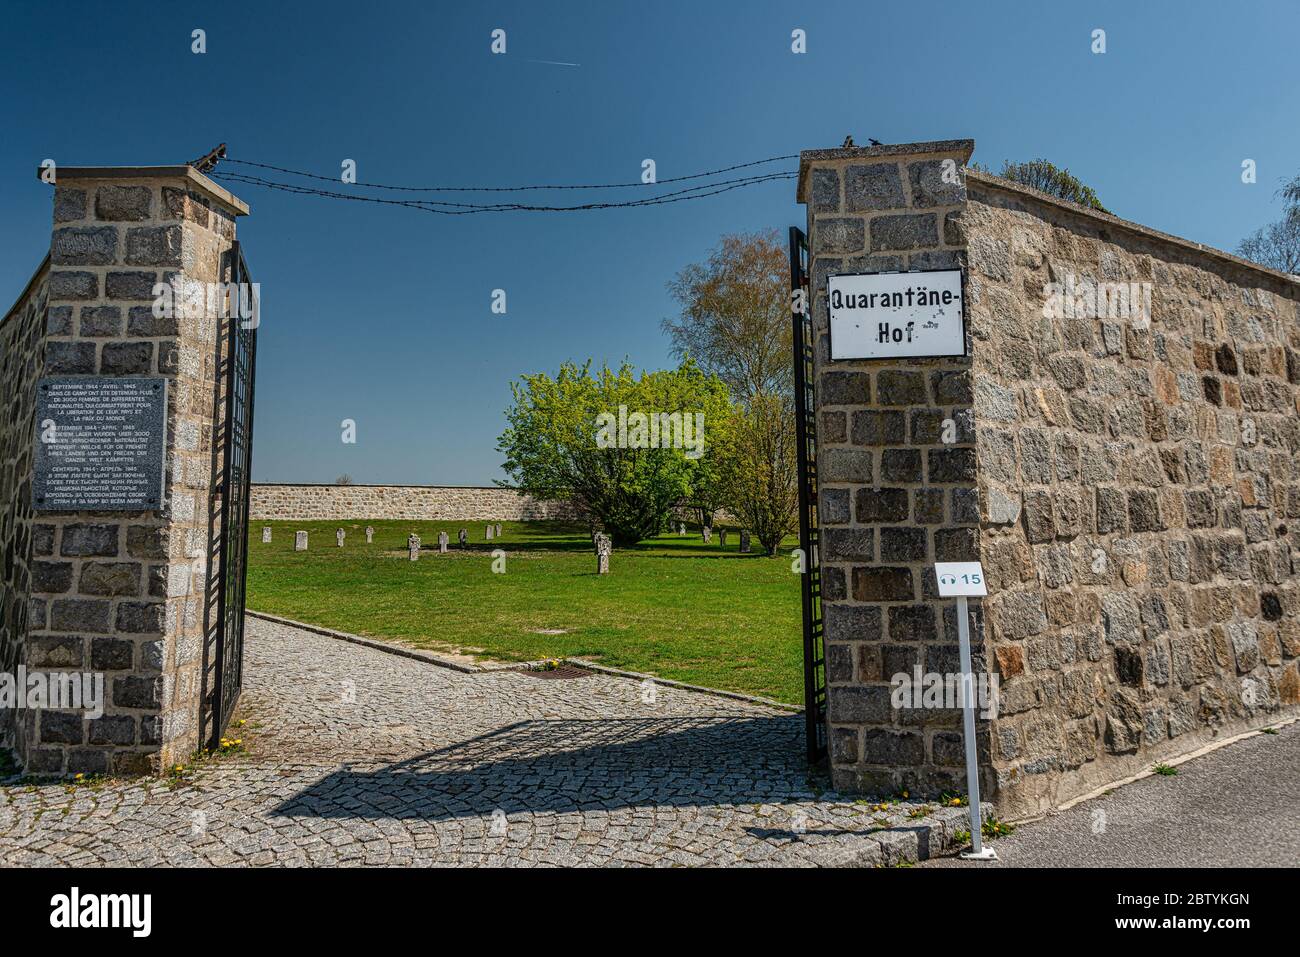 KZ Memorial mauthausen, Monument aux victimes dans le camp de concentration de la Nouvelle-Écosse, dans la 2ème Guerre mondiale Banque D'Images